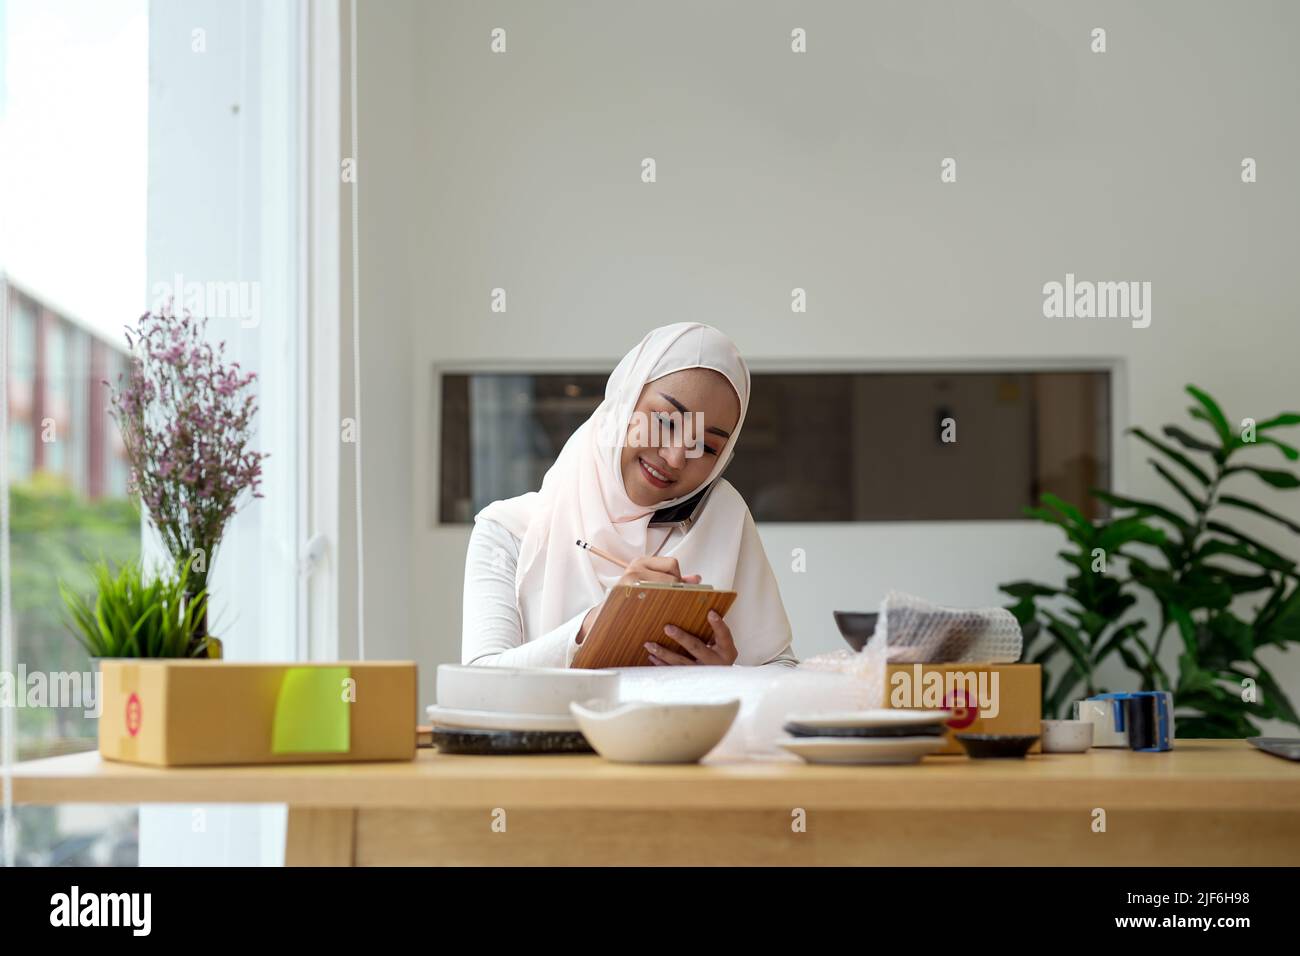 Giovane donna musulmana asiatica proprietario di affari con le scatole del pacco lavoro di vendita in linea, denominando con smartphone, ottiene un ordine dai clienti, prende le note e fa Foto Stock